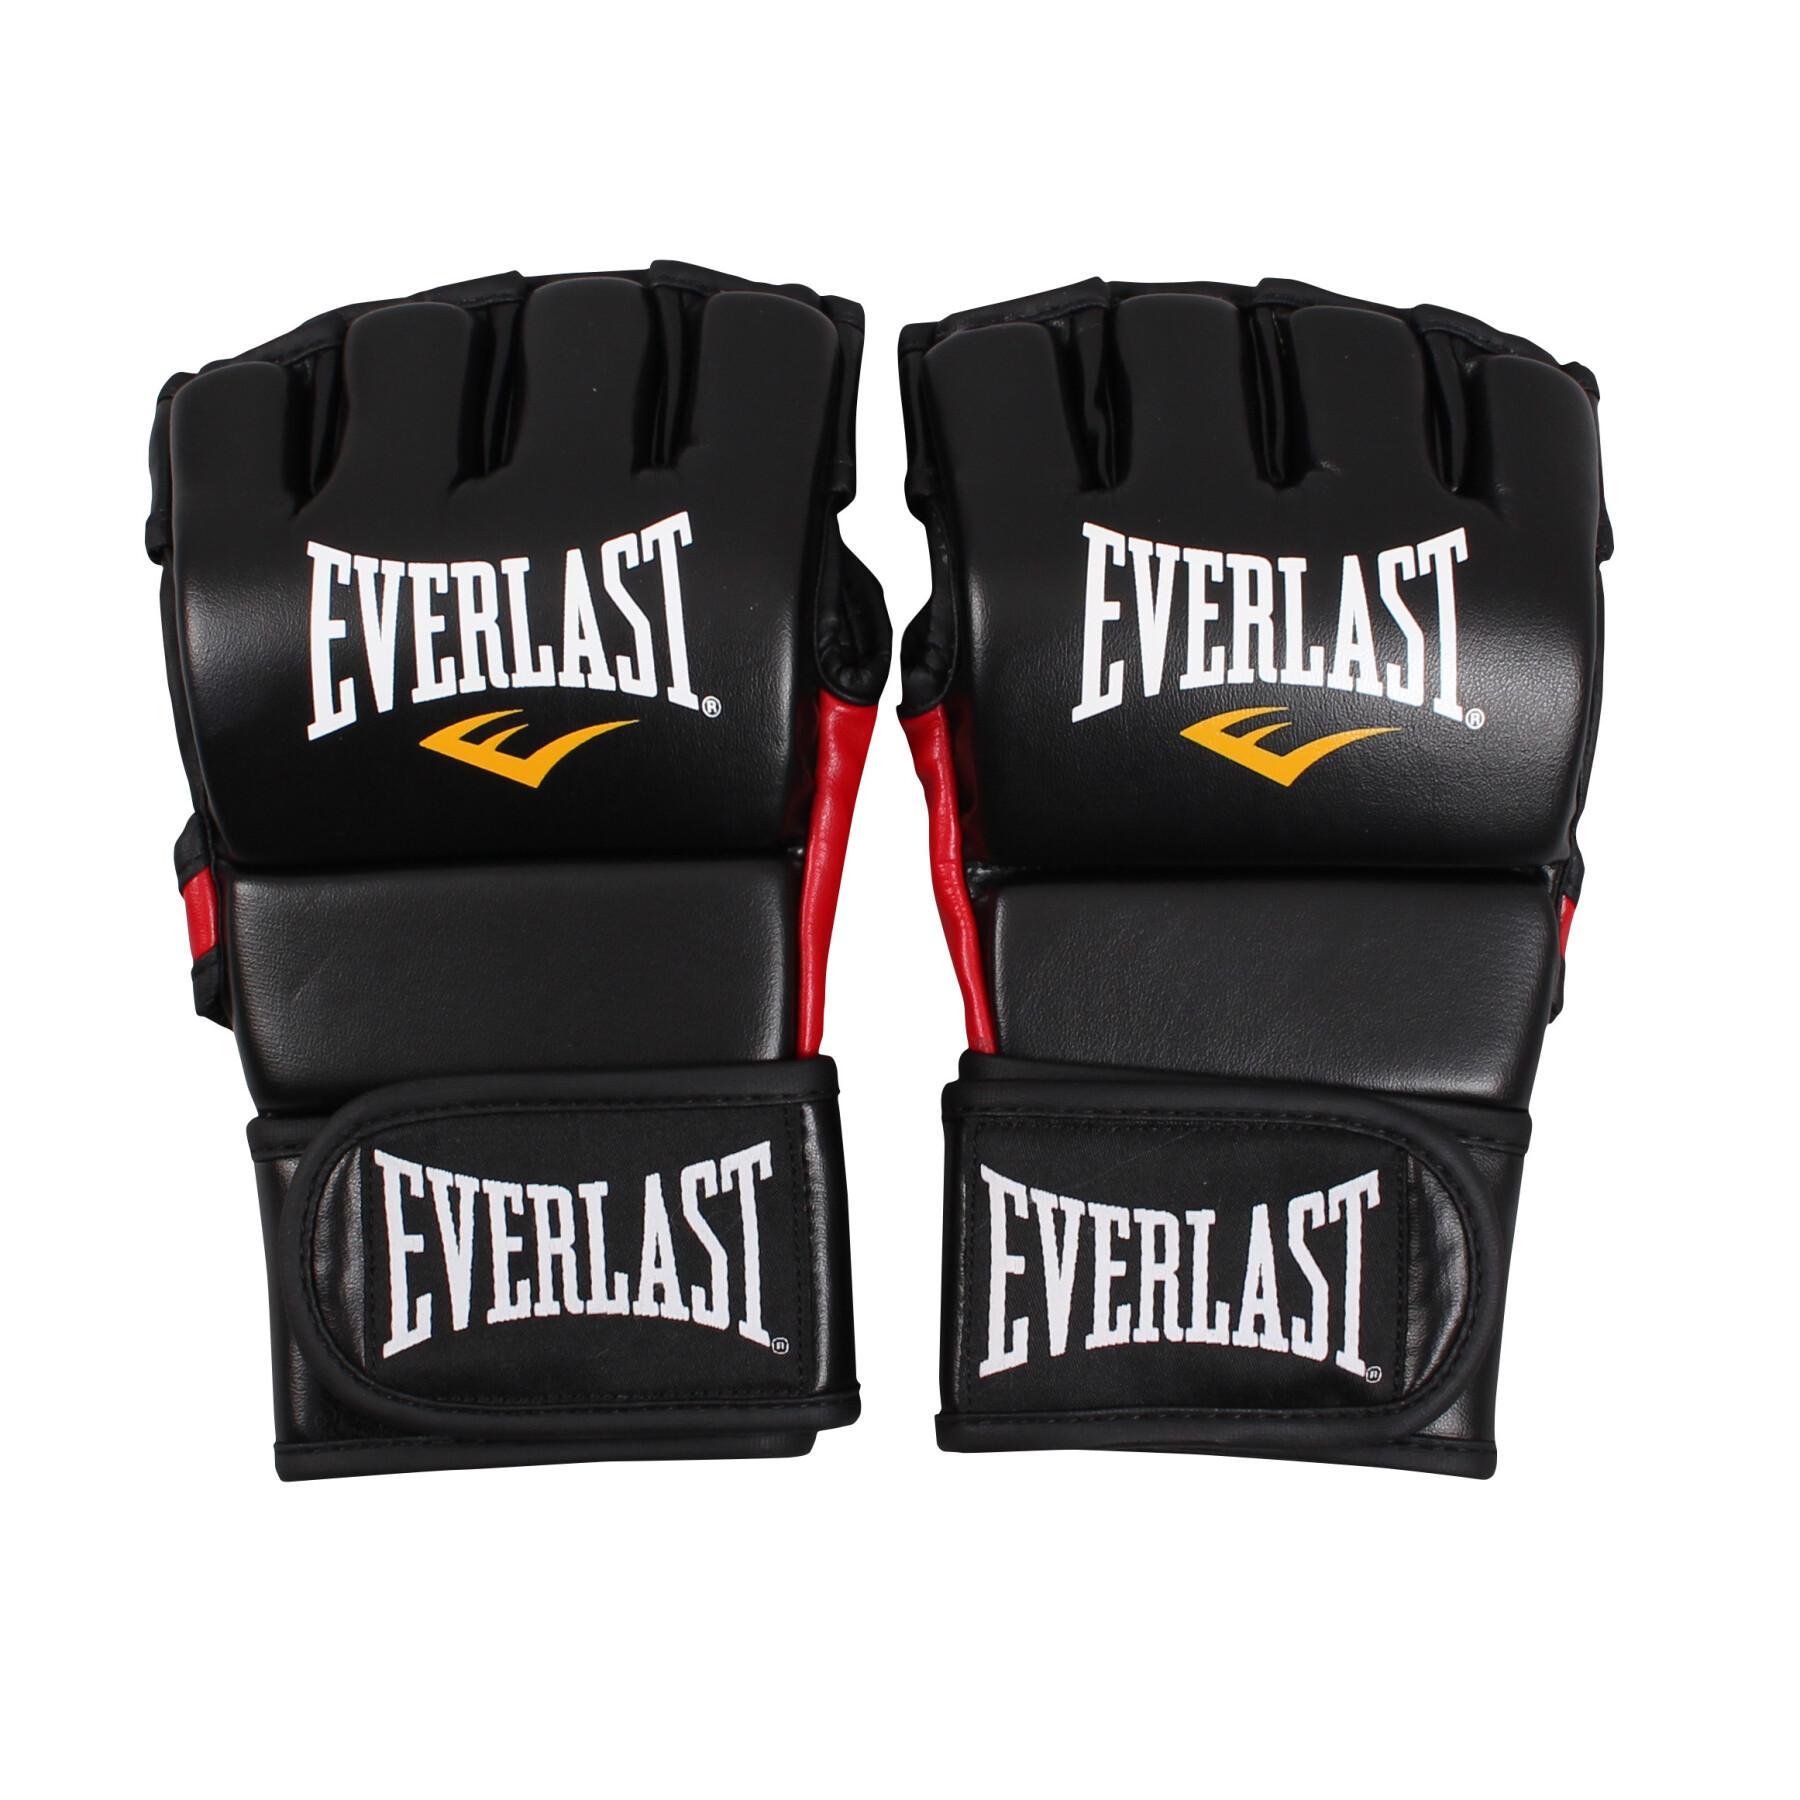 Gant de MMA Everlast pour l'entraînement